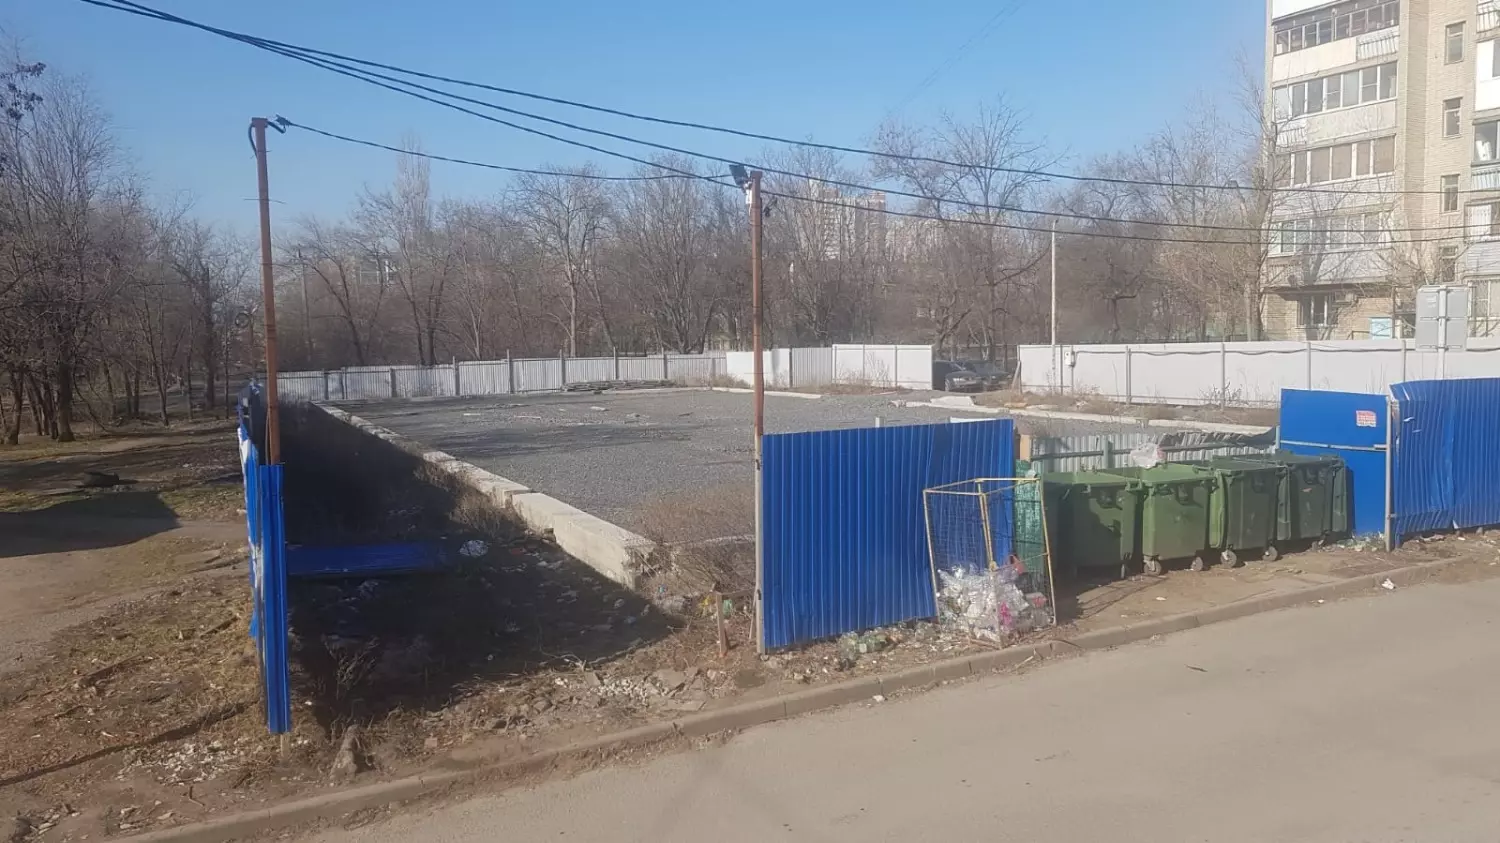 Разрешение на уничтожение деревьев и на застройку зеленой территории рядом со двором на Каширской, 18 в Ростове не выдавалось. Ситуация получила огласку, стройку забросили. 